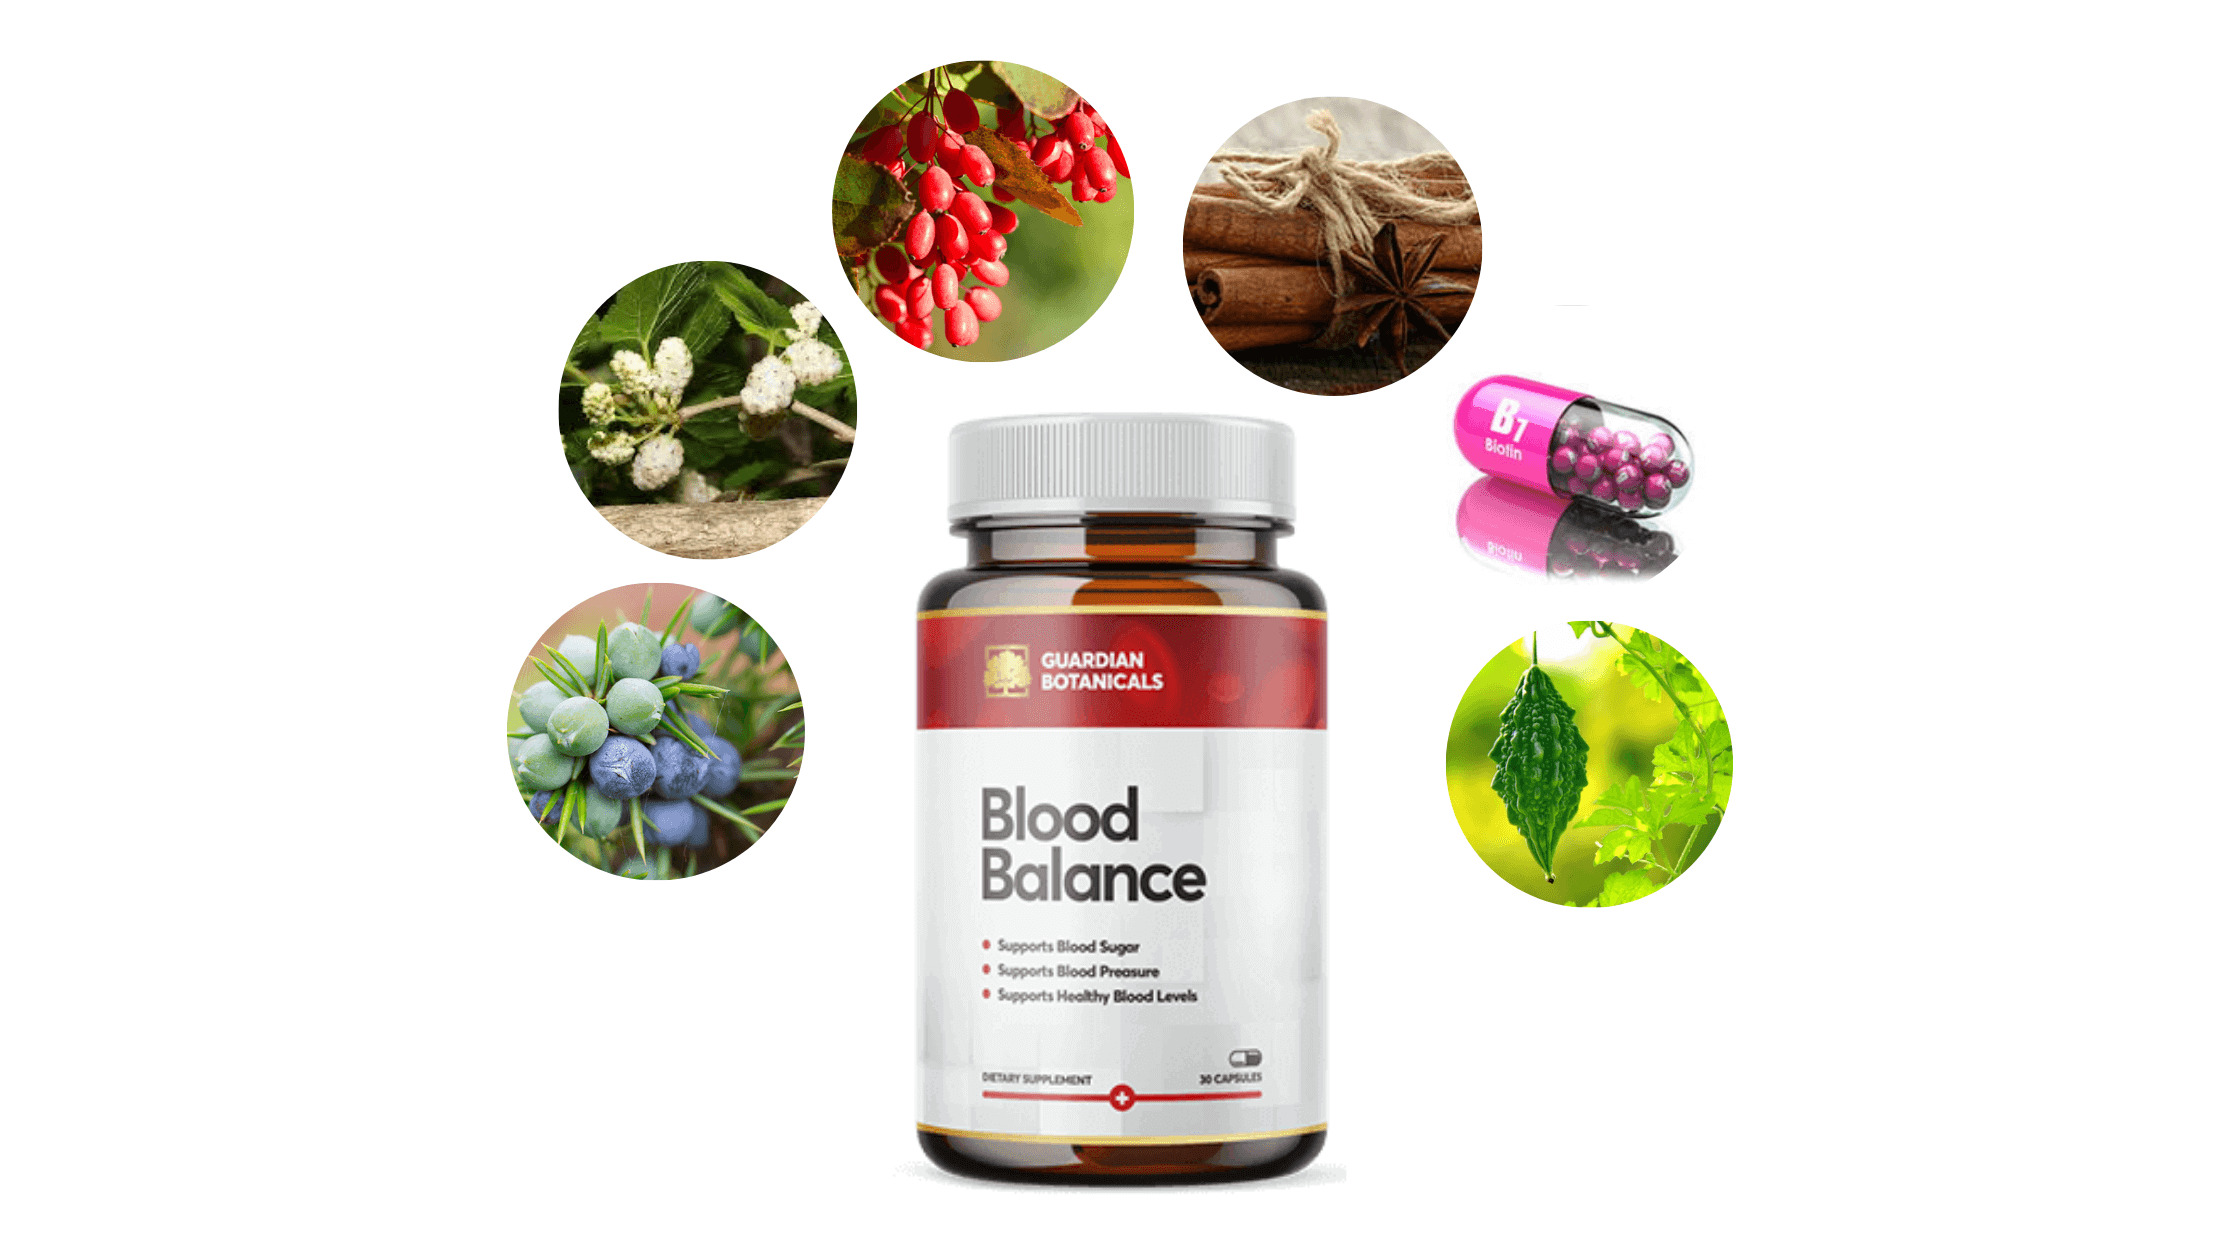 Guardian Botanicals Blood Balance ingredients